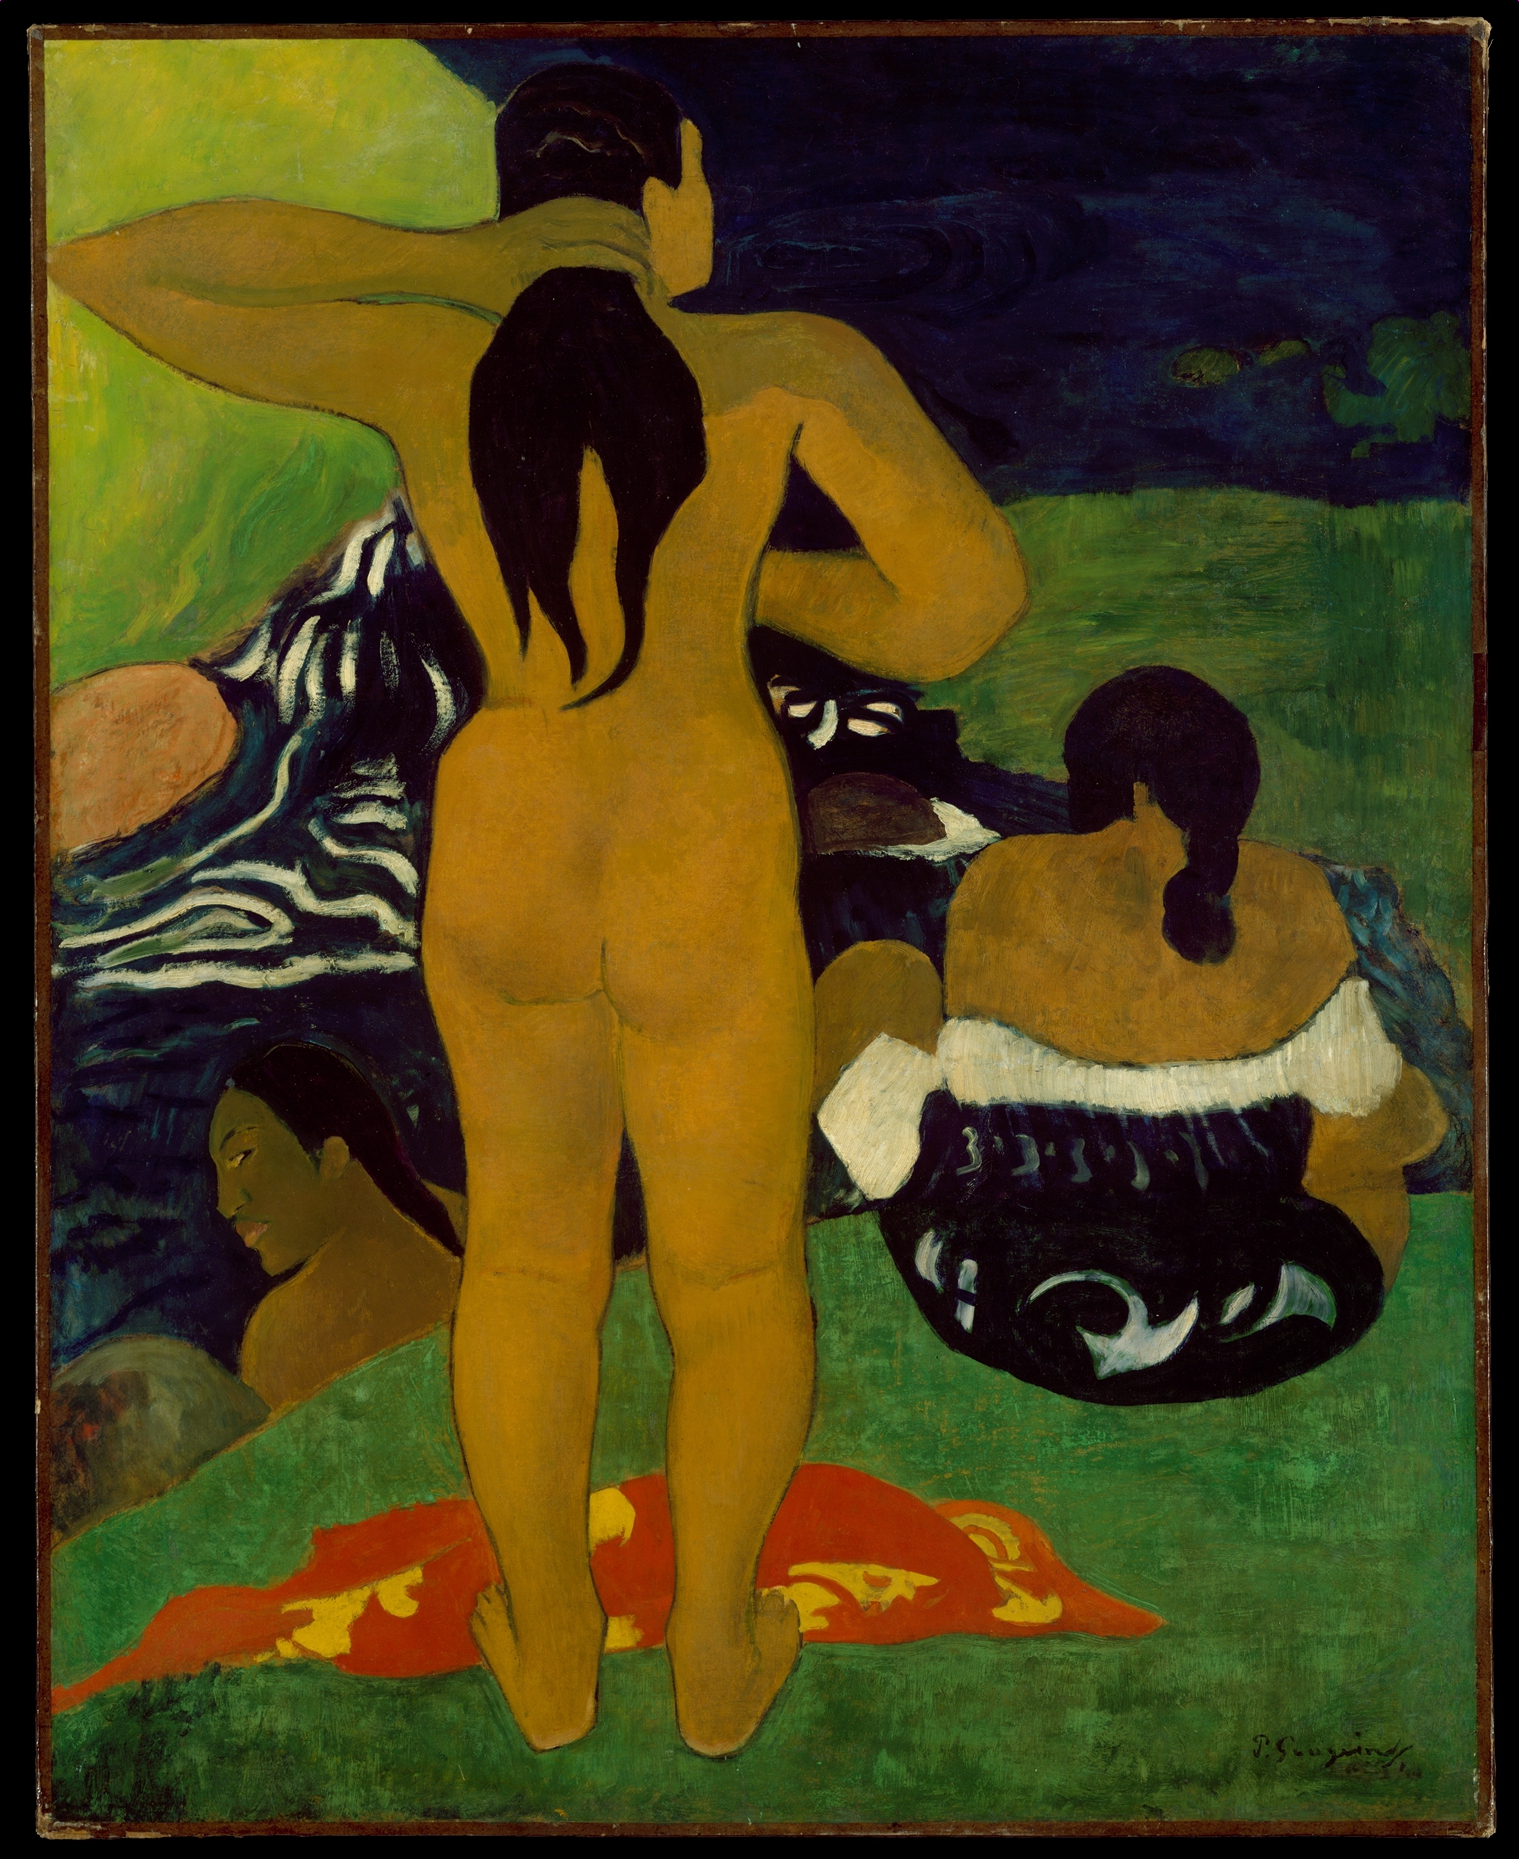 入浴するタヒチの女性 by Paul Gauguin - 1892年 - 43 3/4 x 35 1/8 インチ 